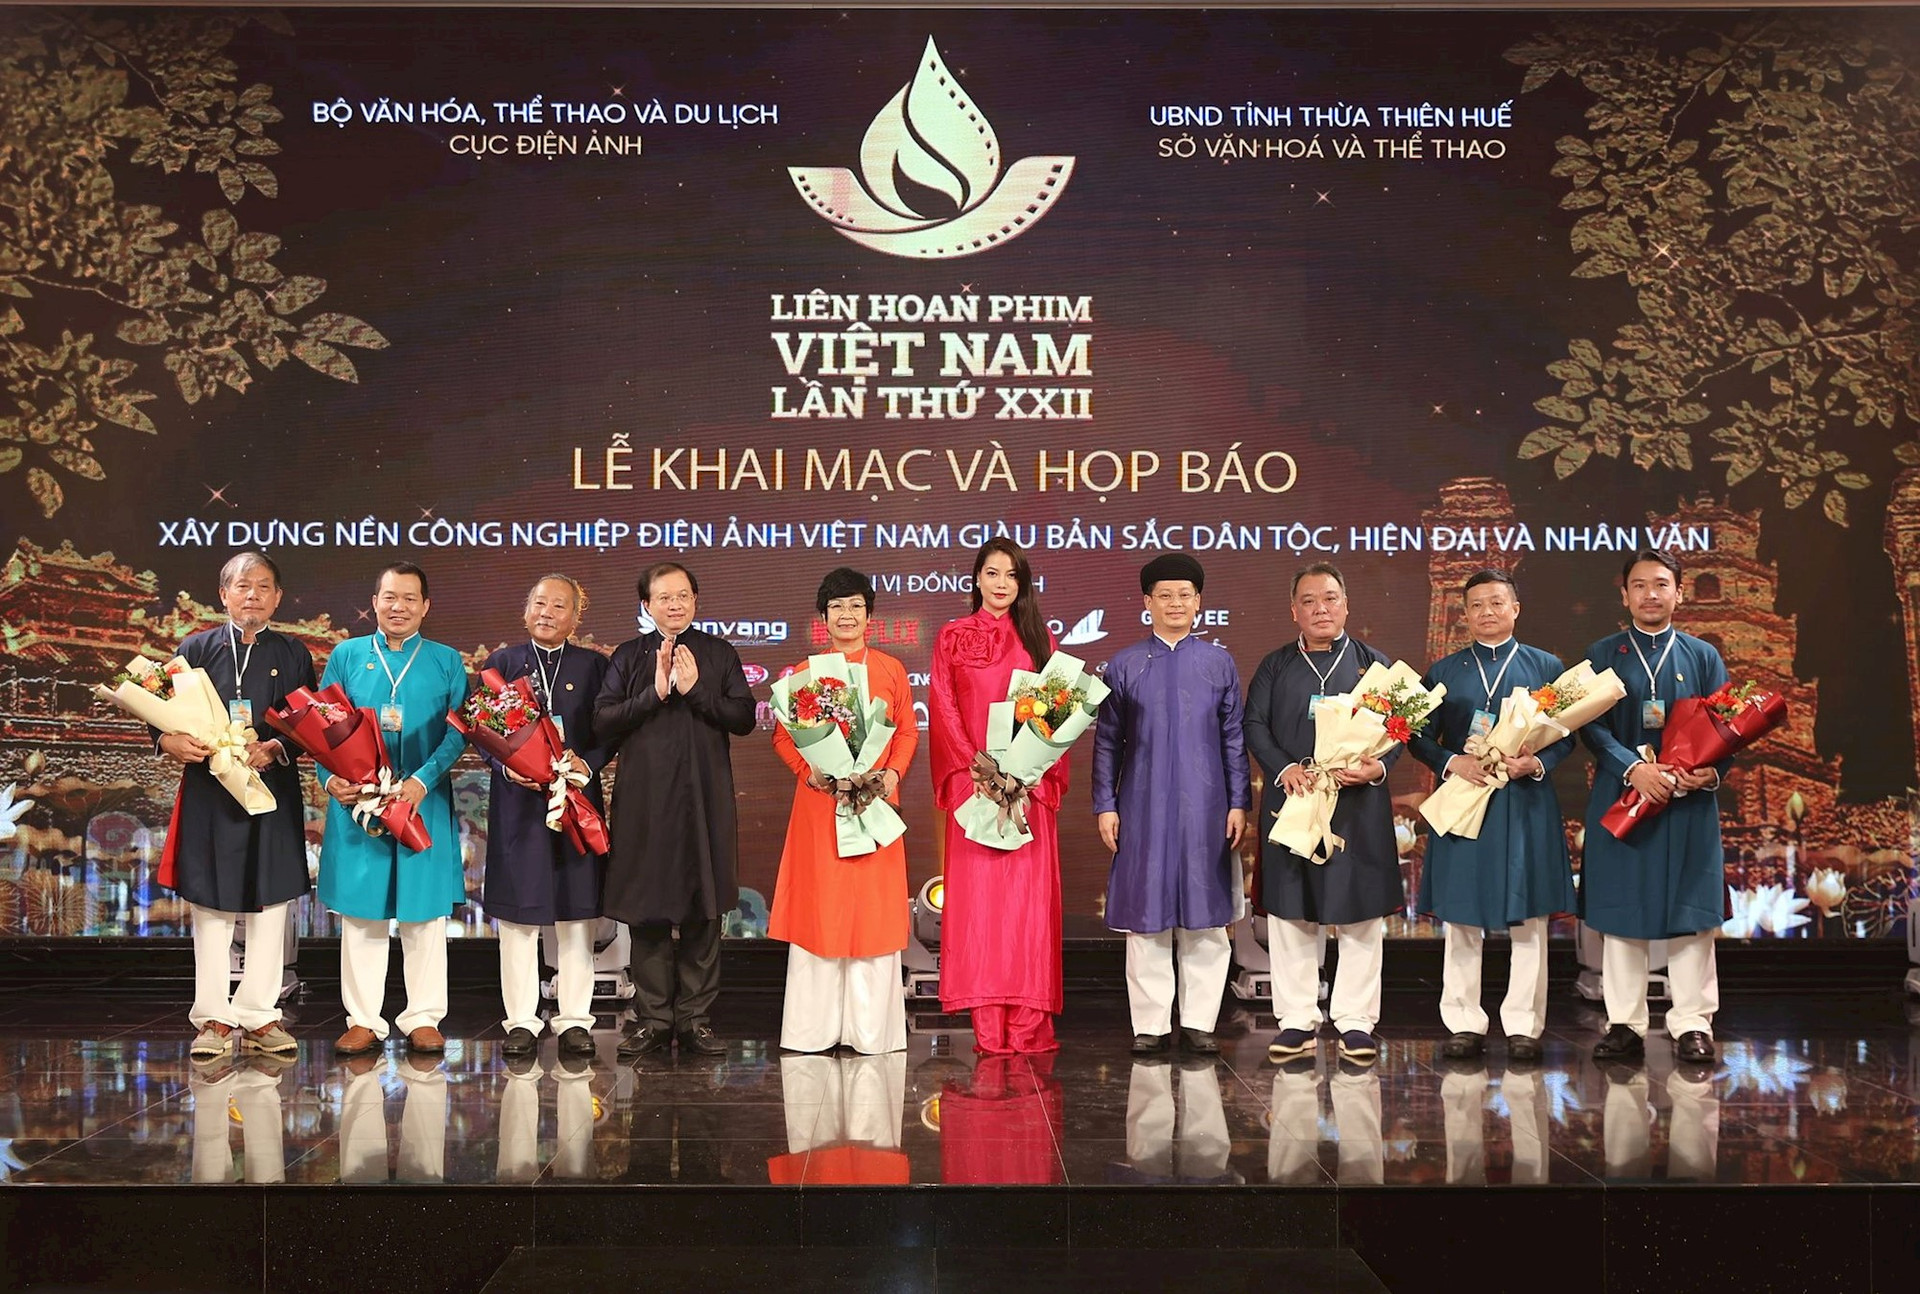 Liên hoan Phim Việt Nam lần thứ XXII khai mạc tại thành phố Huế